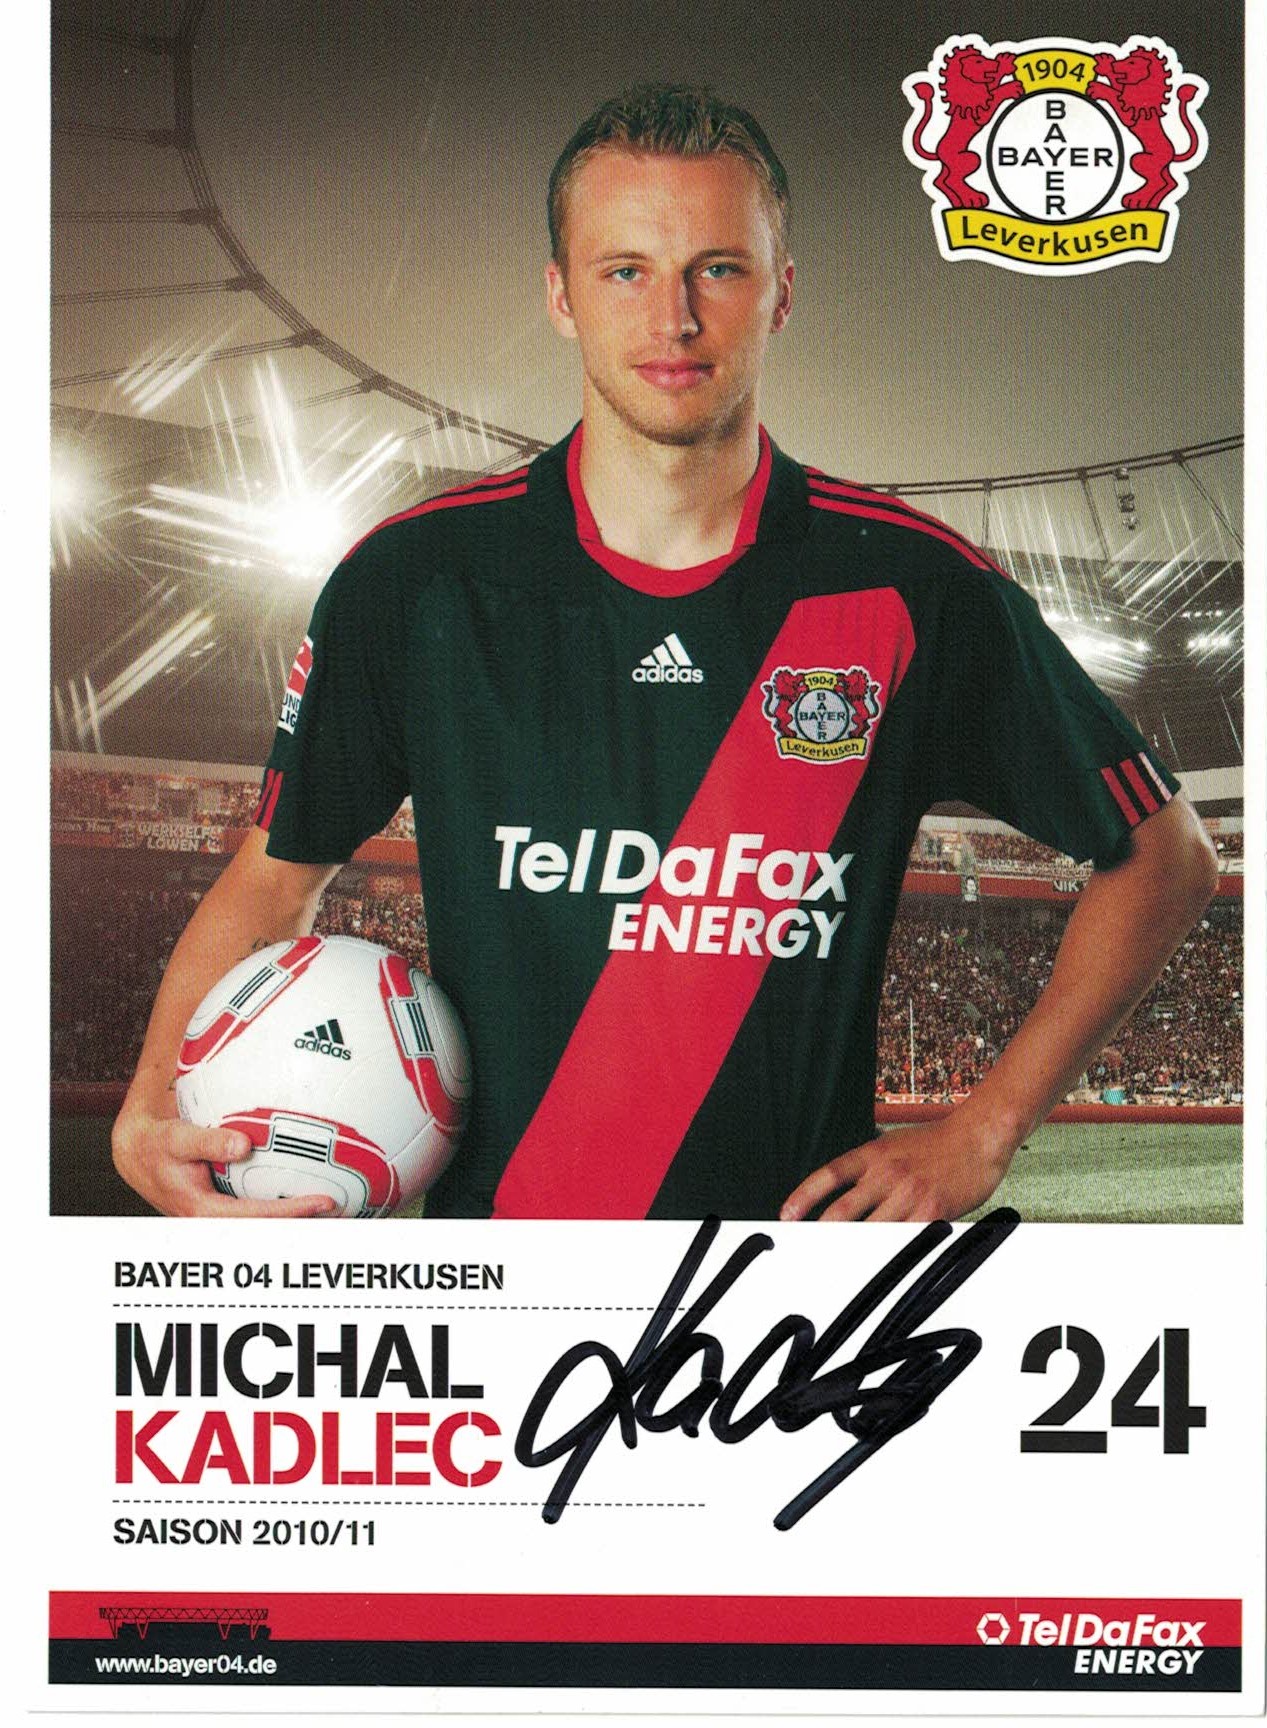 Michal Kadlec Bayer 04 Leverkusen 2010/11 Podpisova karta autogram